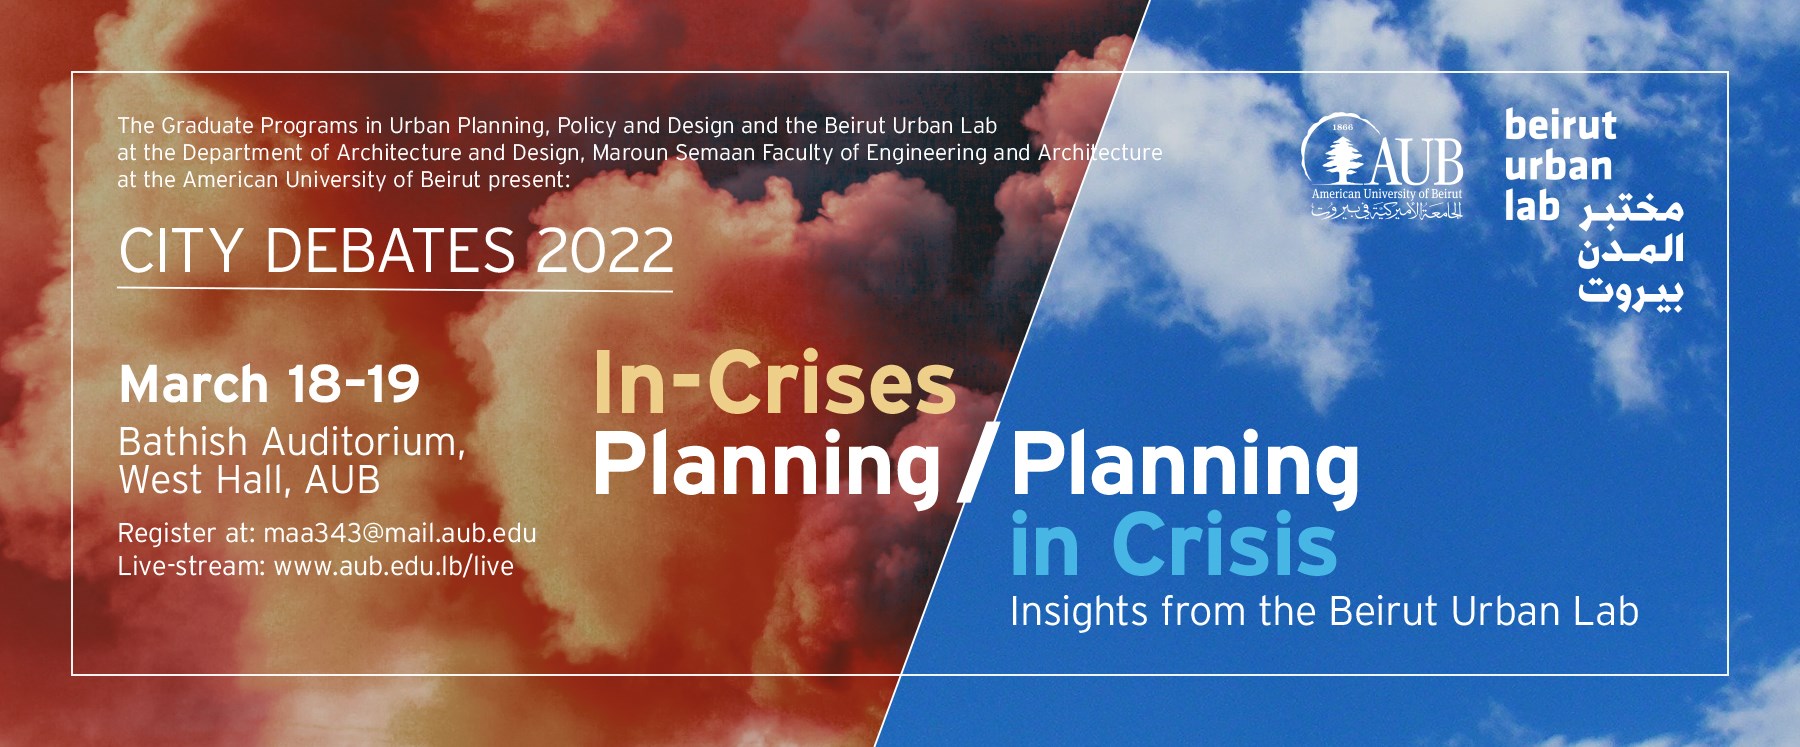 مؤتمر سيتي ديبايتس 2022: التخطيط في الأزمات / أزمات التخطيط